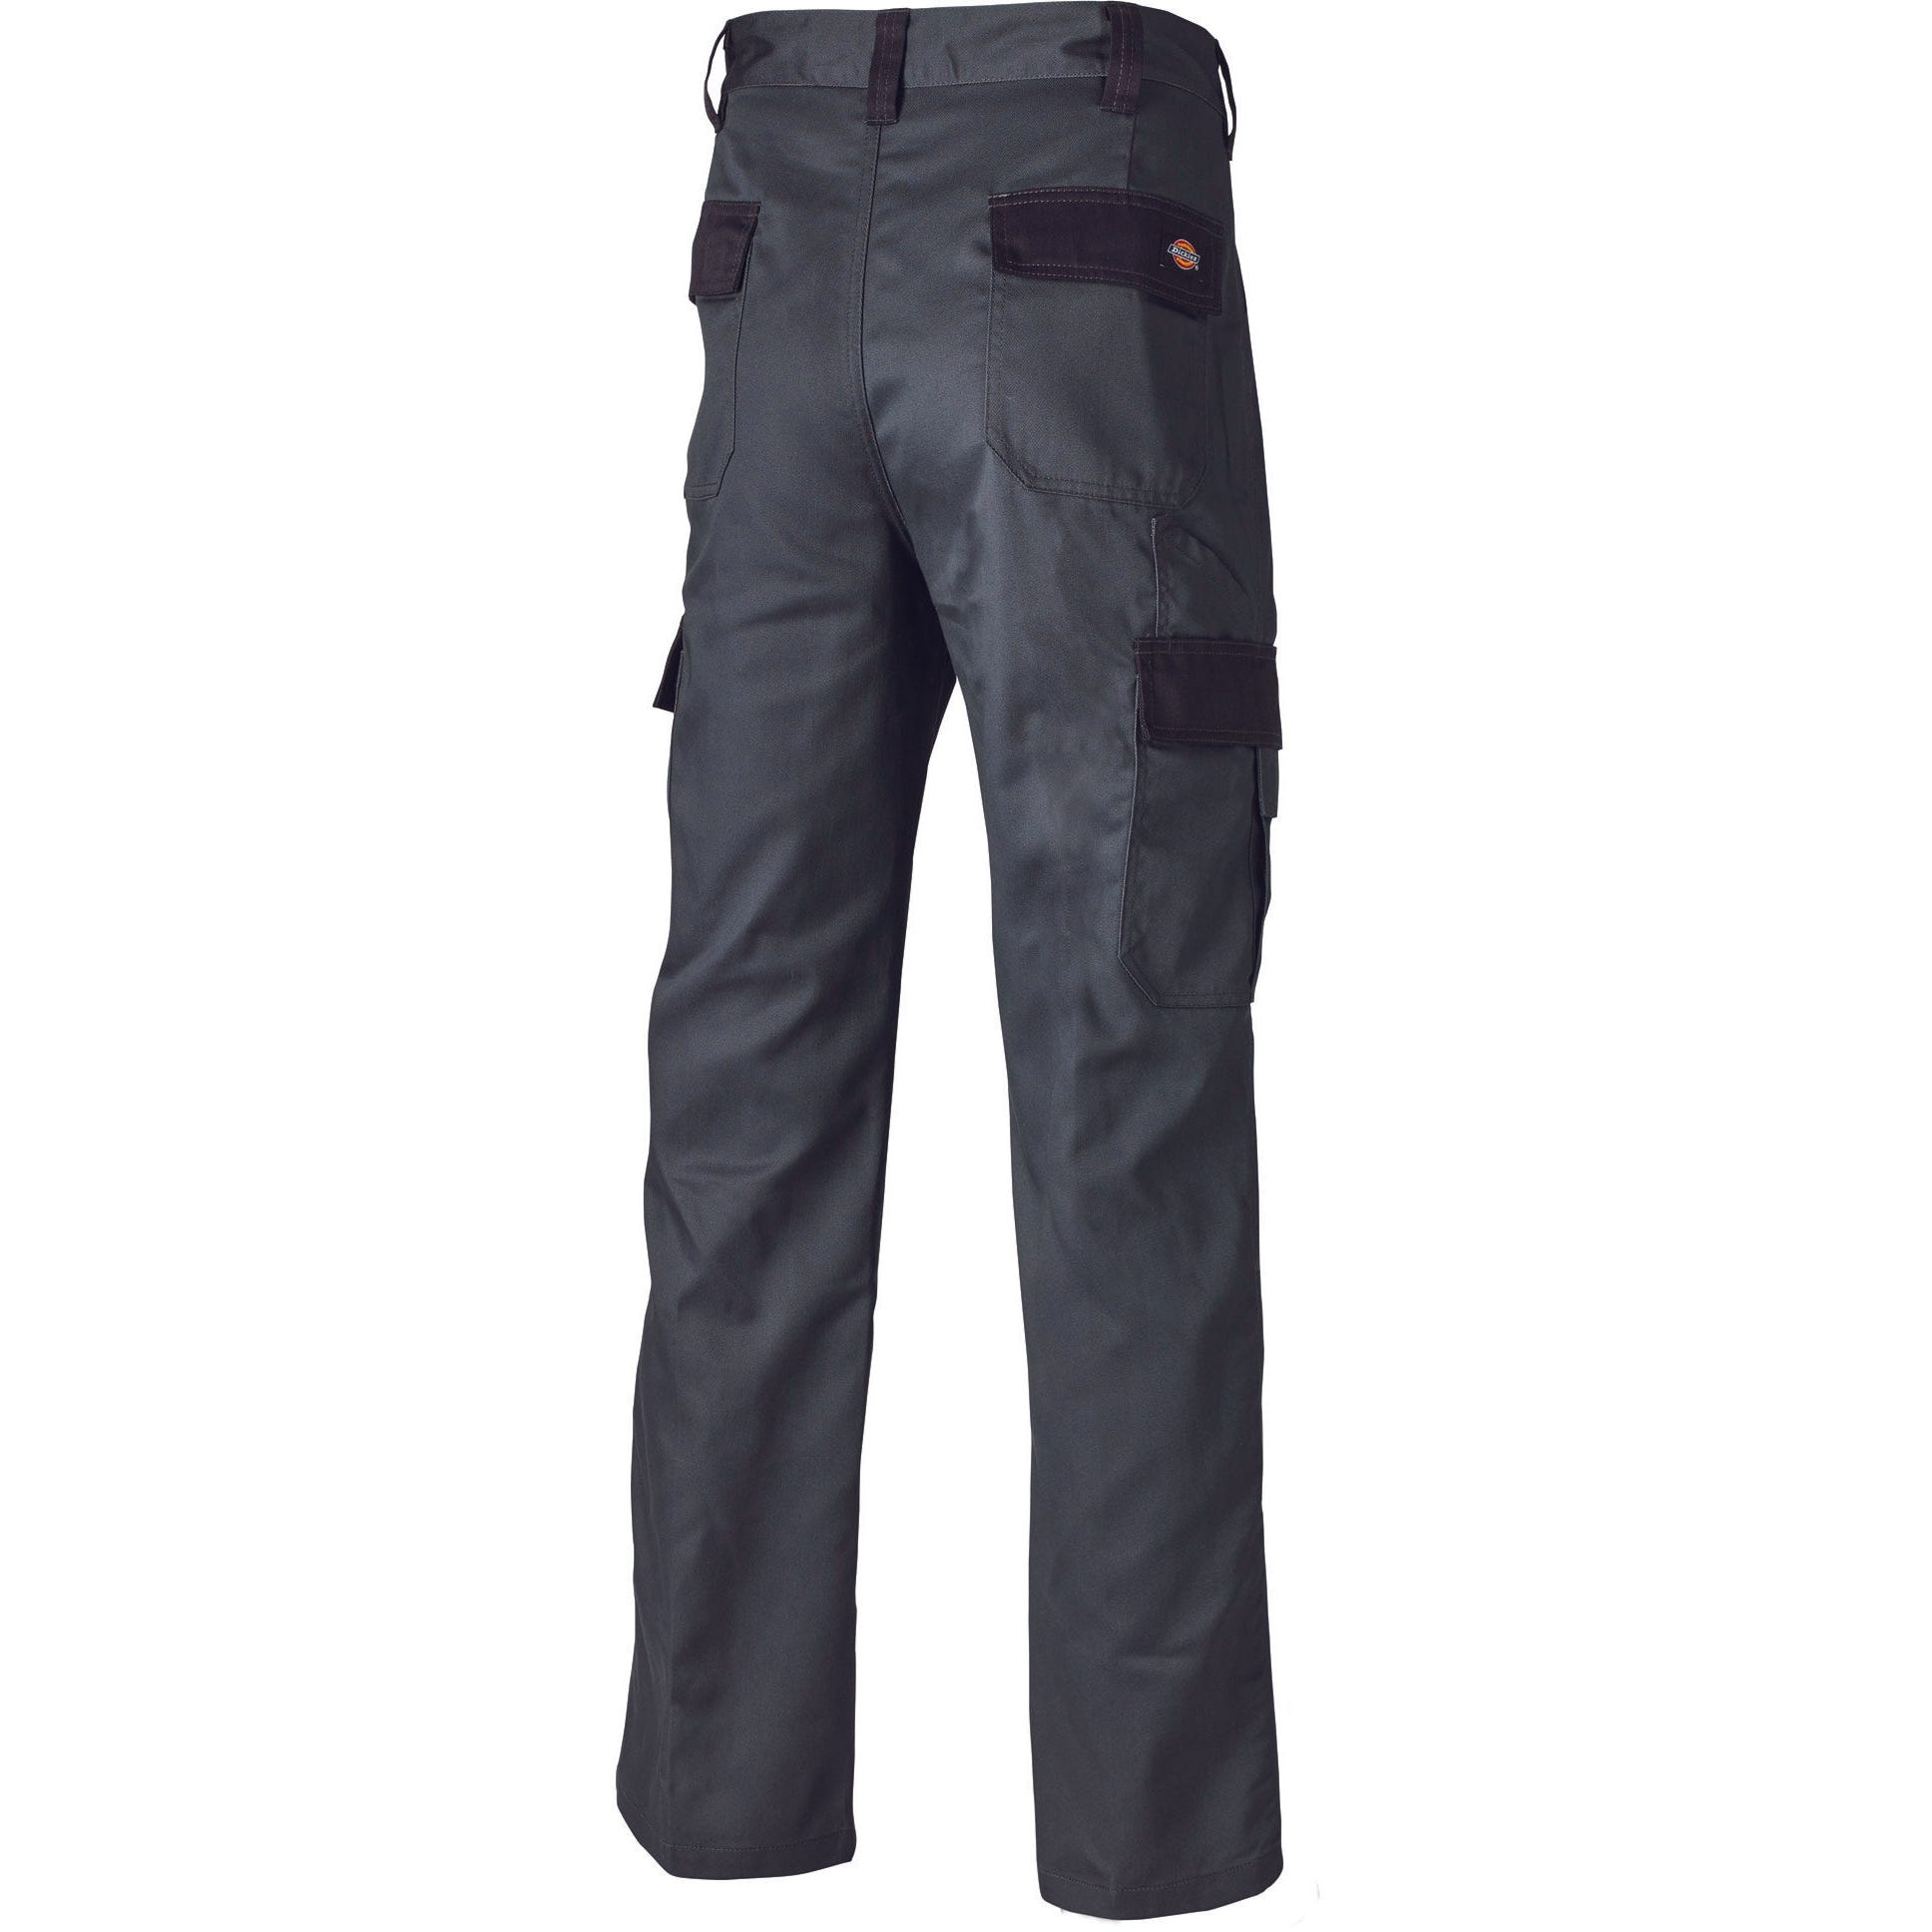 Pantalon Everyday Gris et noir- Dickies - Taille 48 6